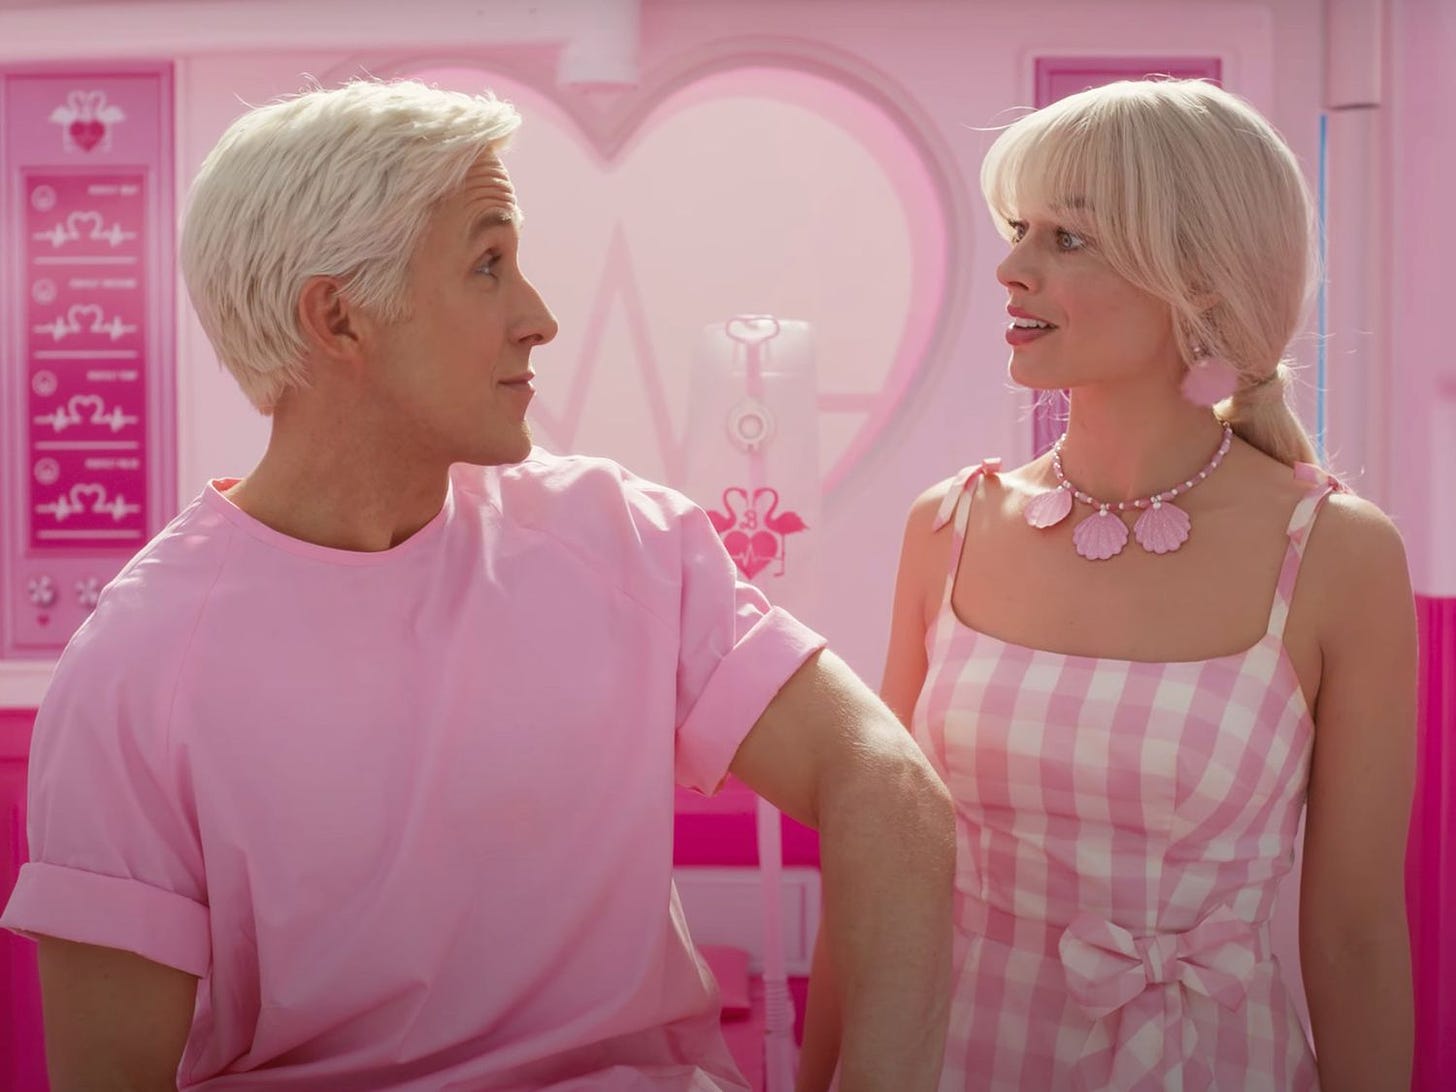 Scena del film Barbie in cui Margot Robbie e Ryan Gosling si guardano. Sono entrambi biondo platino e vestiti di rosa. Sullo sfondo c'è del mobilio rosa